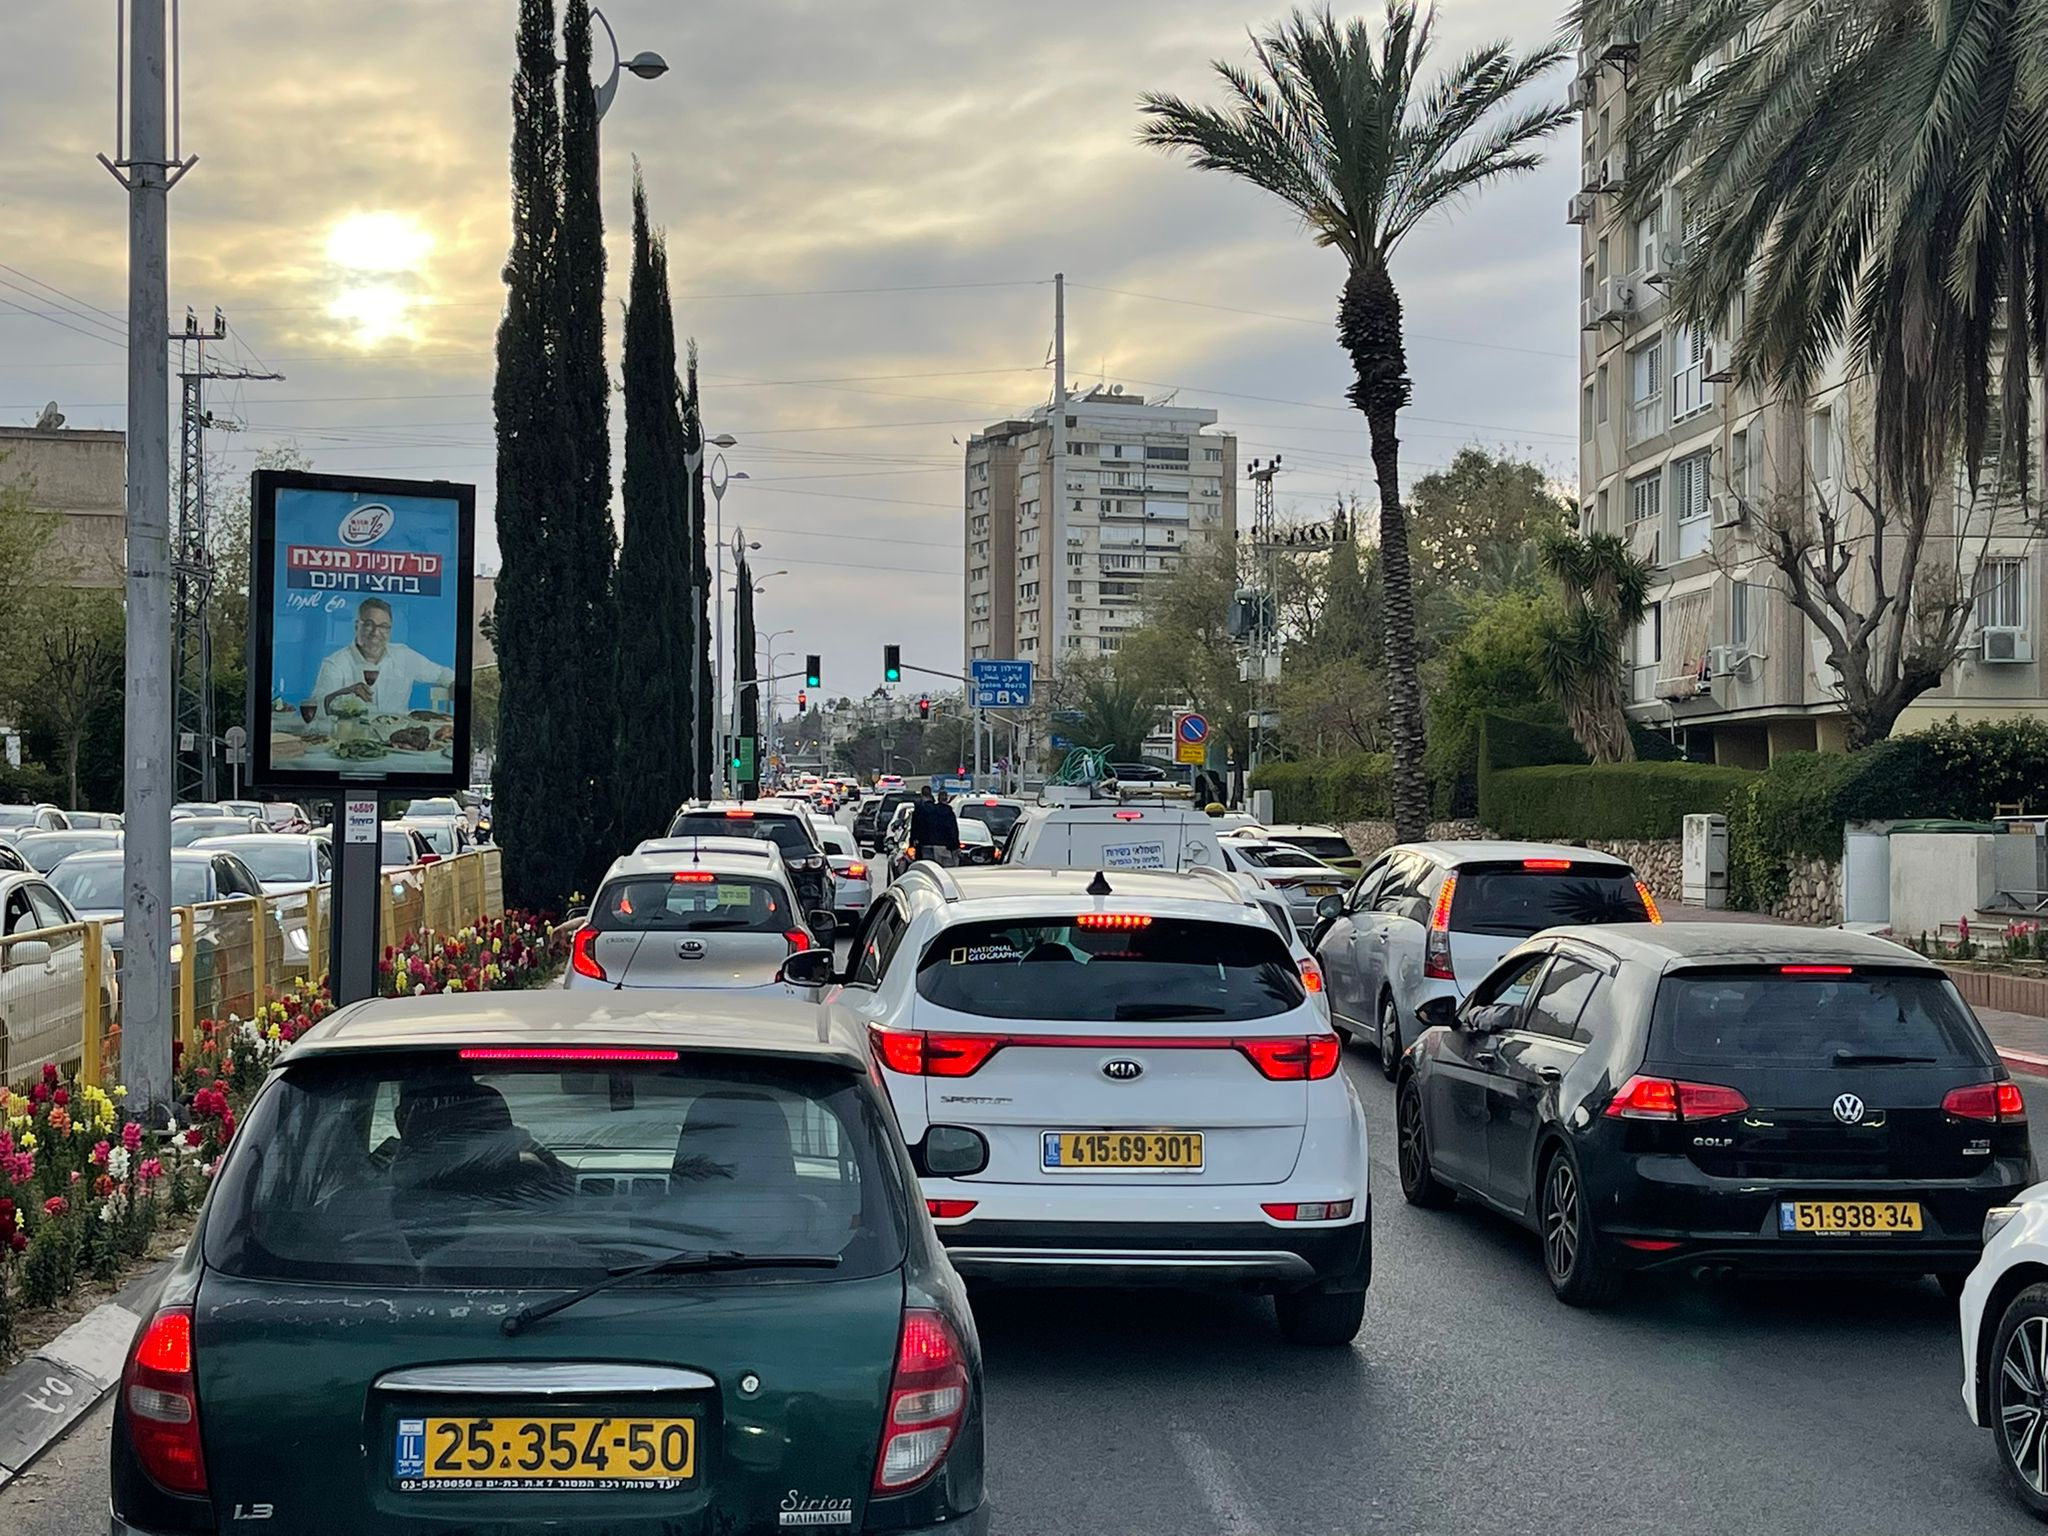 min Roeispaan Ja Traffic jams just a maths problem, says Israeli AI firm